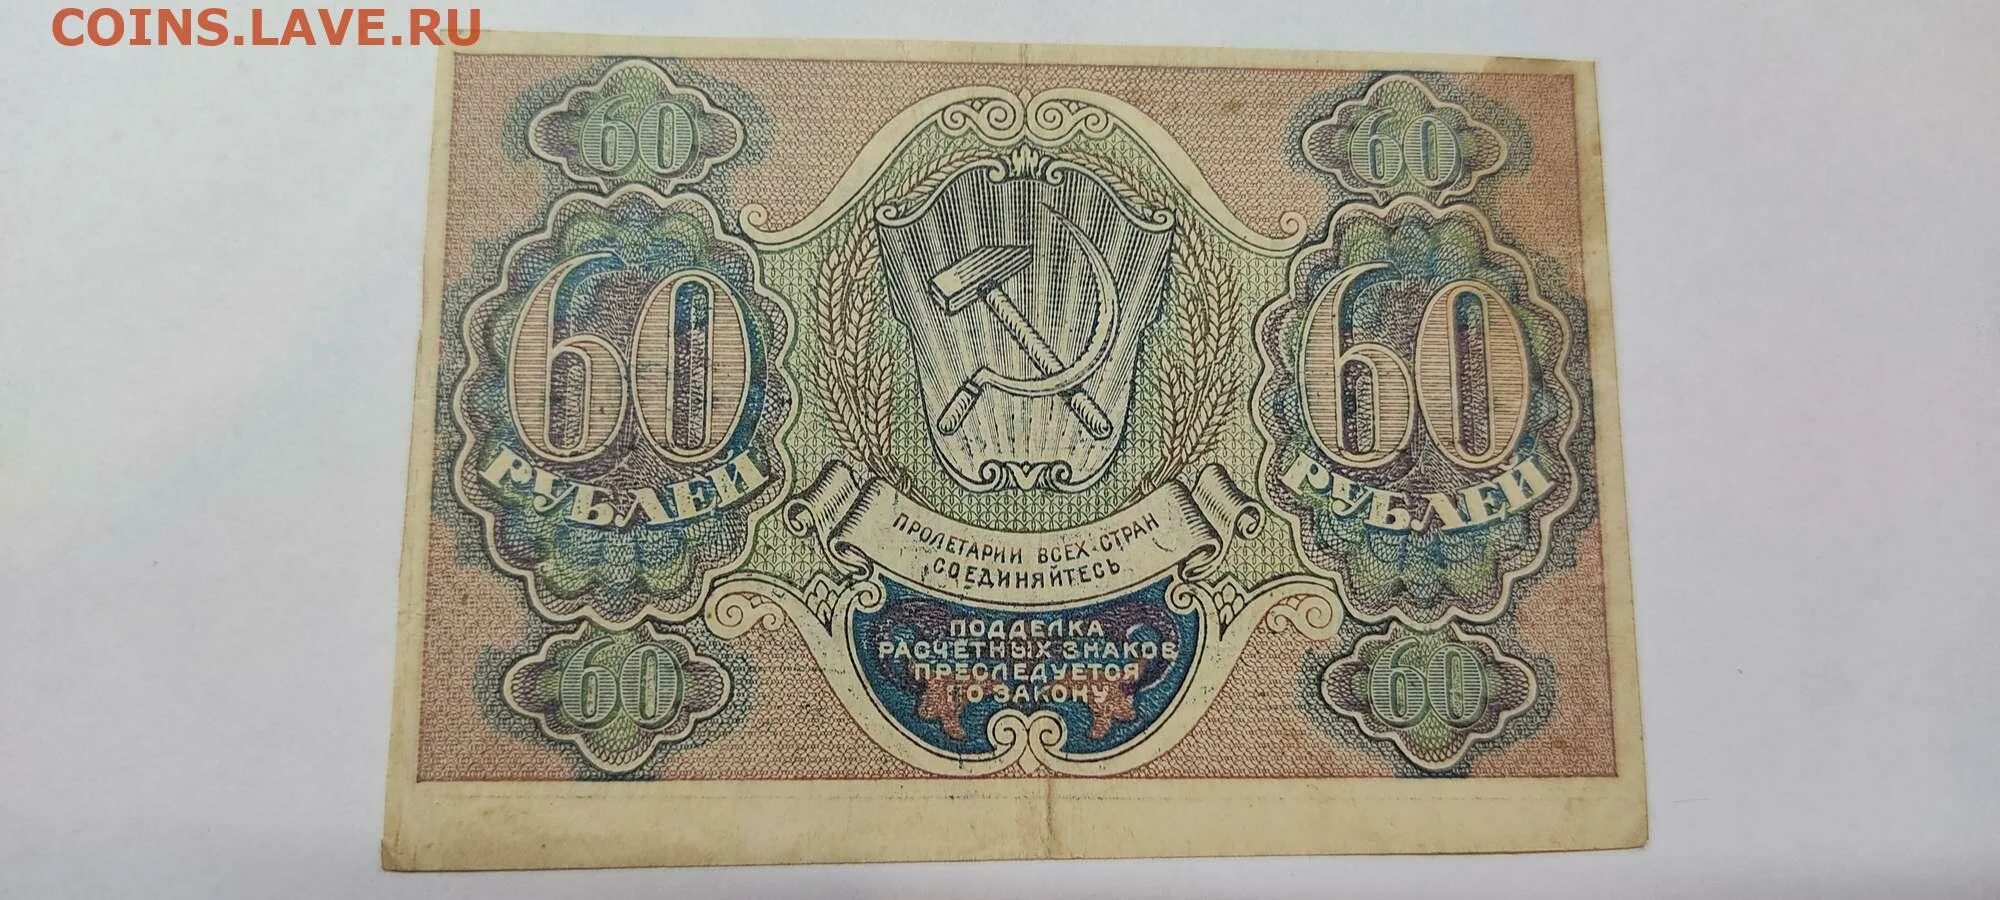 60 Рублей. Расчетный знак 60 рублей. Рубли в 60-х годах XIX В. 60 Рублей фото. 16 60 в рублях